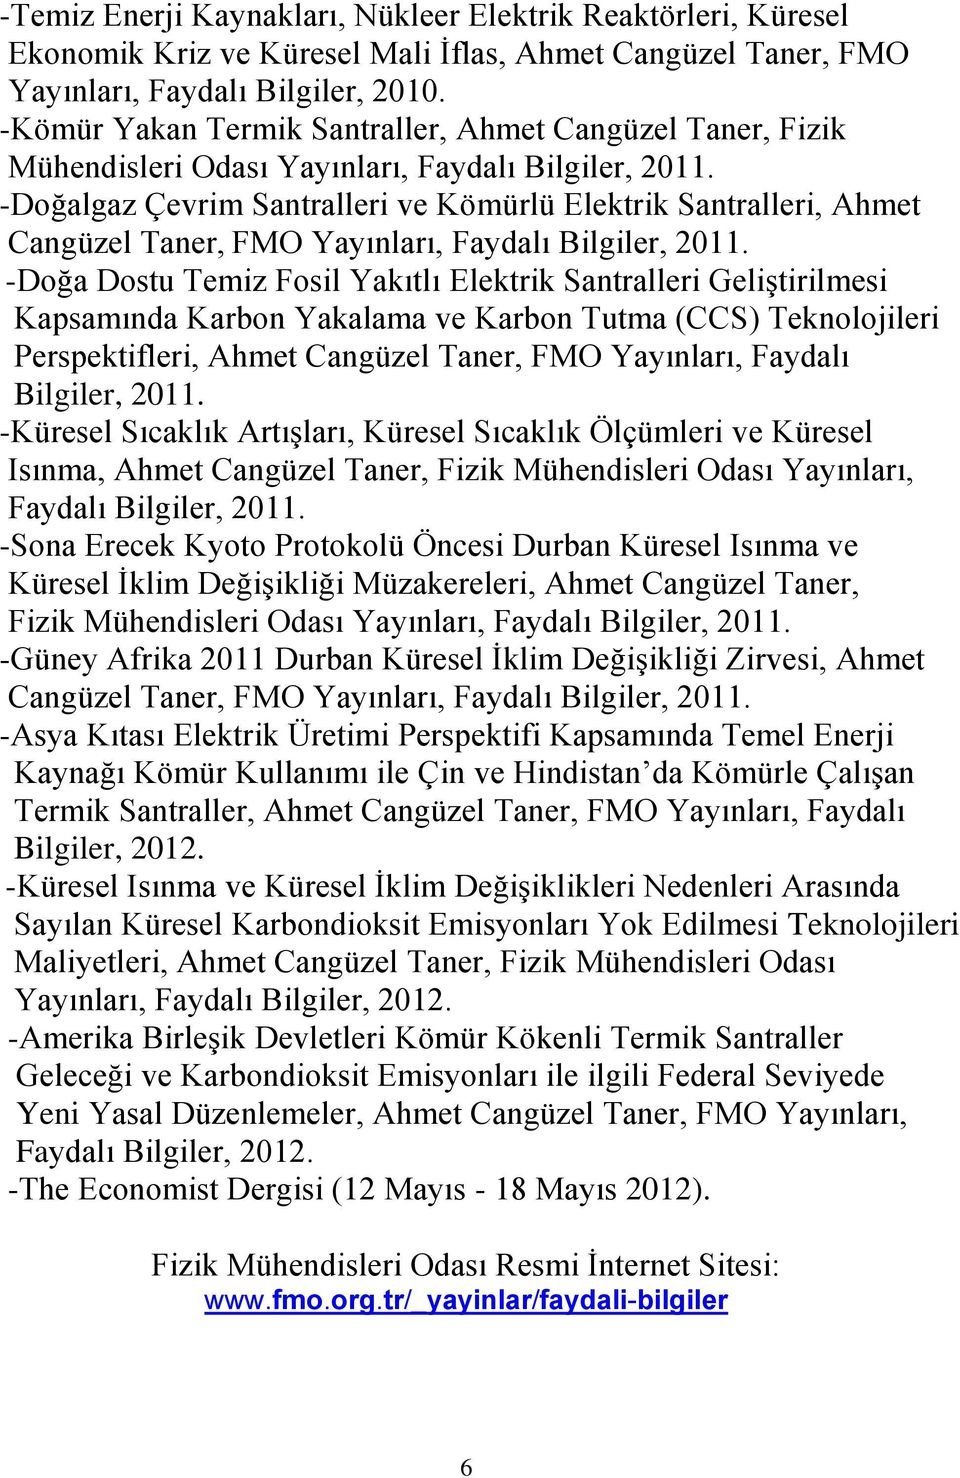 -Doğalgaz Çevrim Santralleri ve Kömürlü Elektrik Santralleri, Ahmet Cangüzel Taner, FMO Yayınları, Faydalı Bilgiler, 2011.